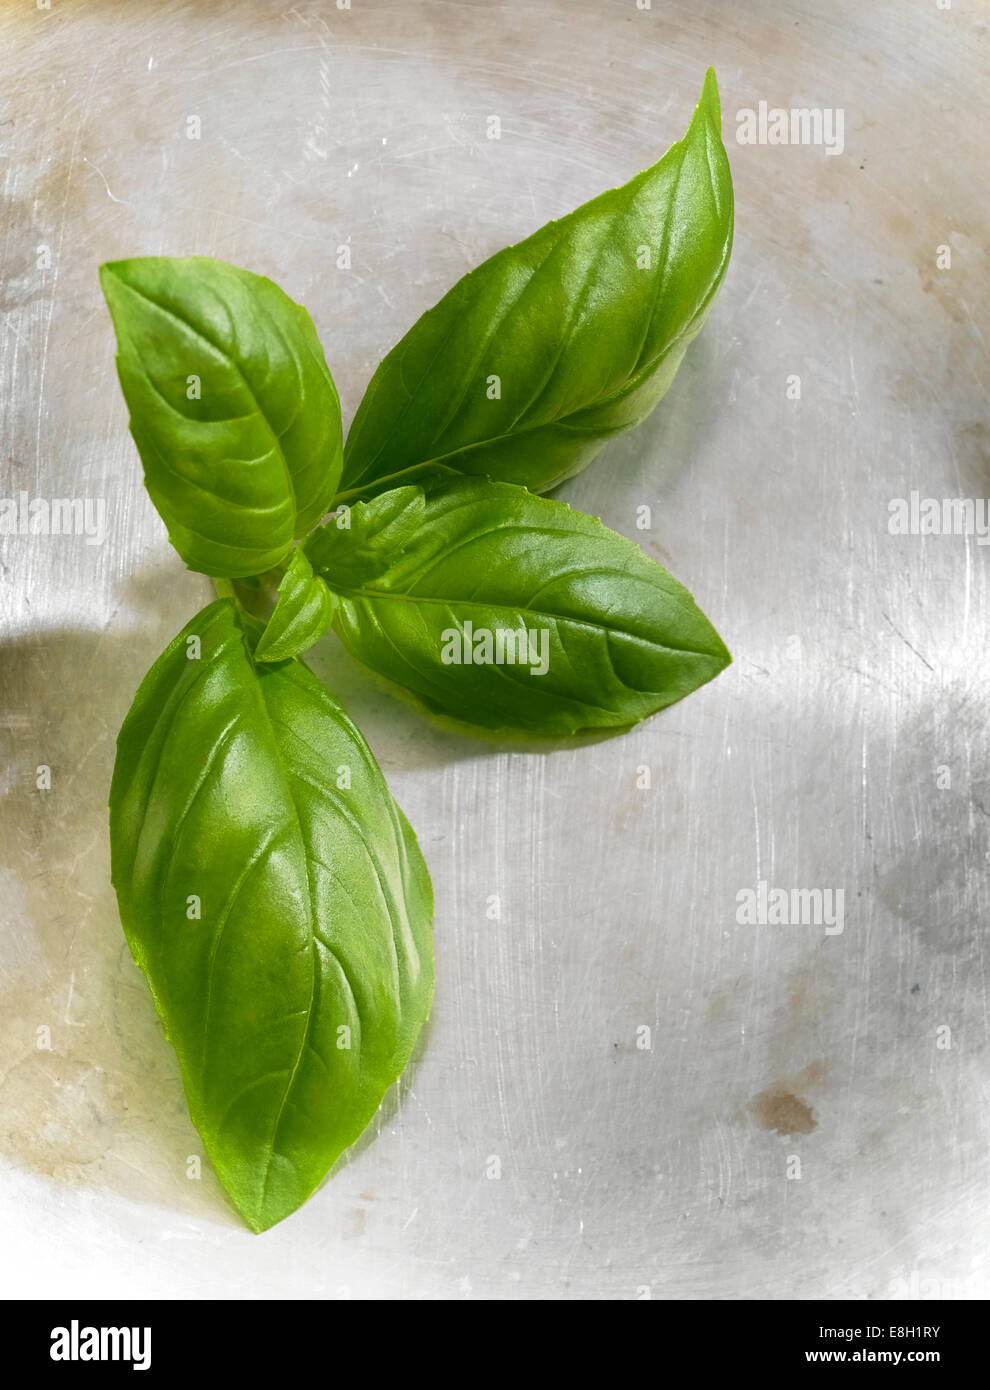 Frisches Grün wählen Sie Basilikum Blätter auf einer Stahloberfläche Stockfoto